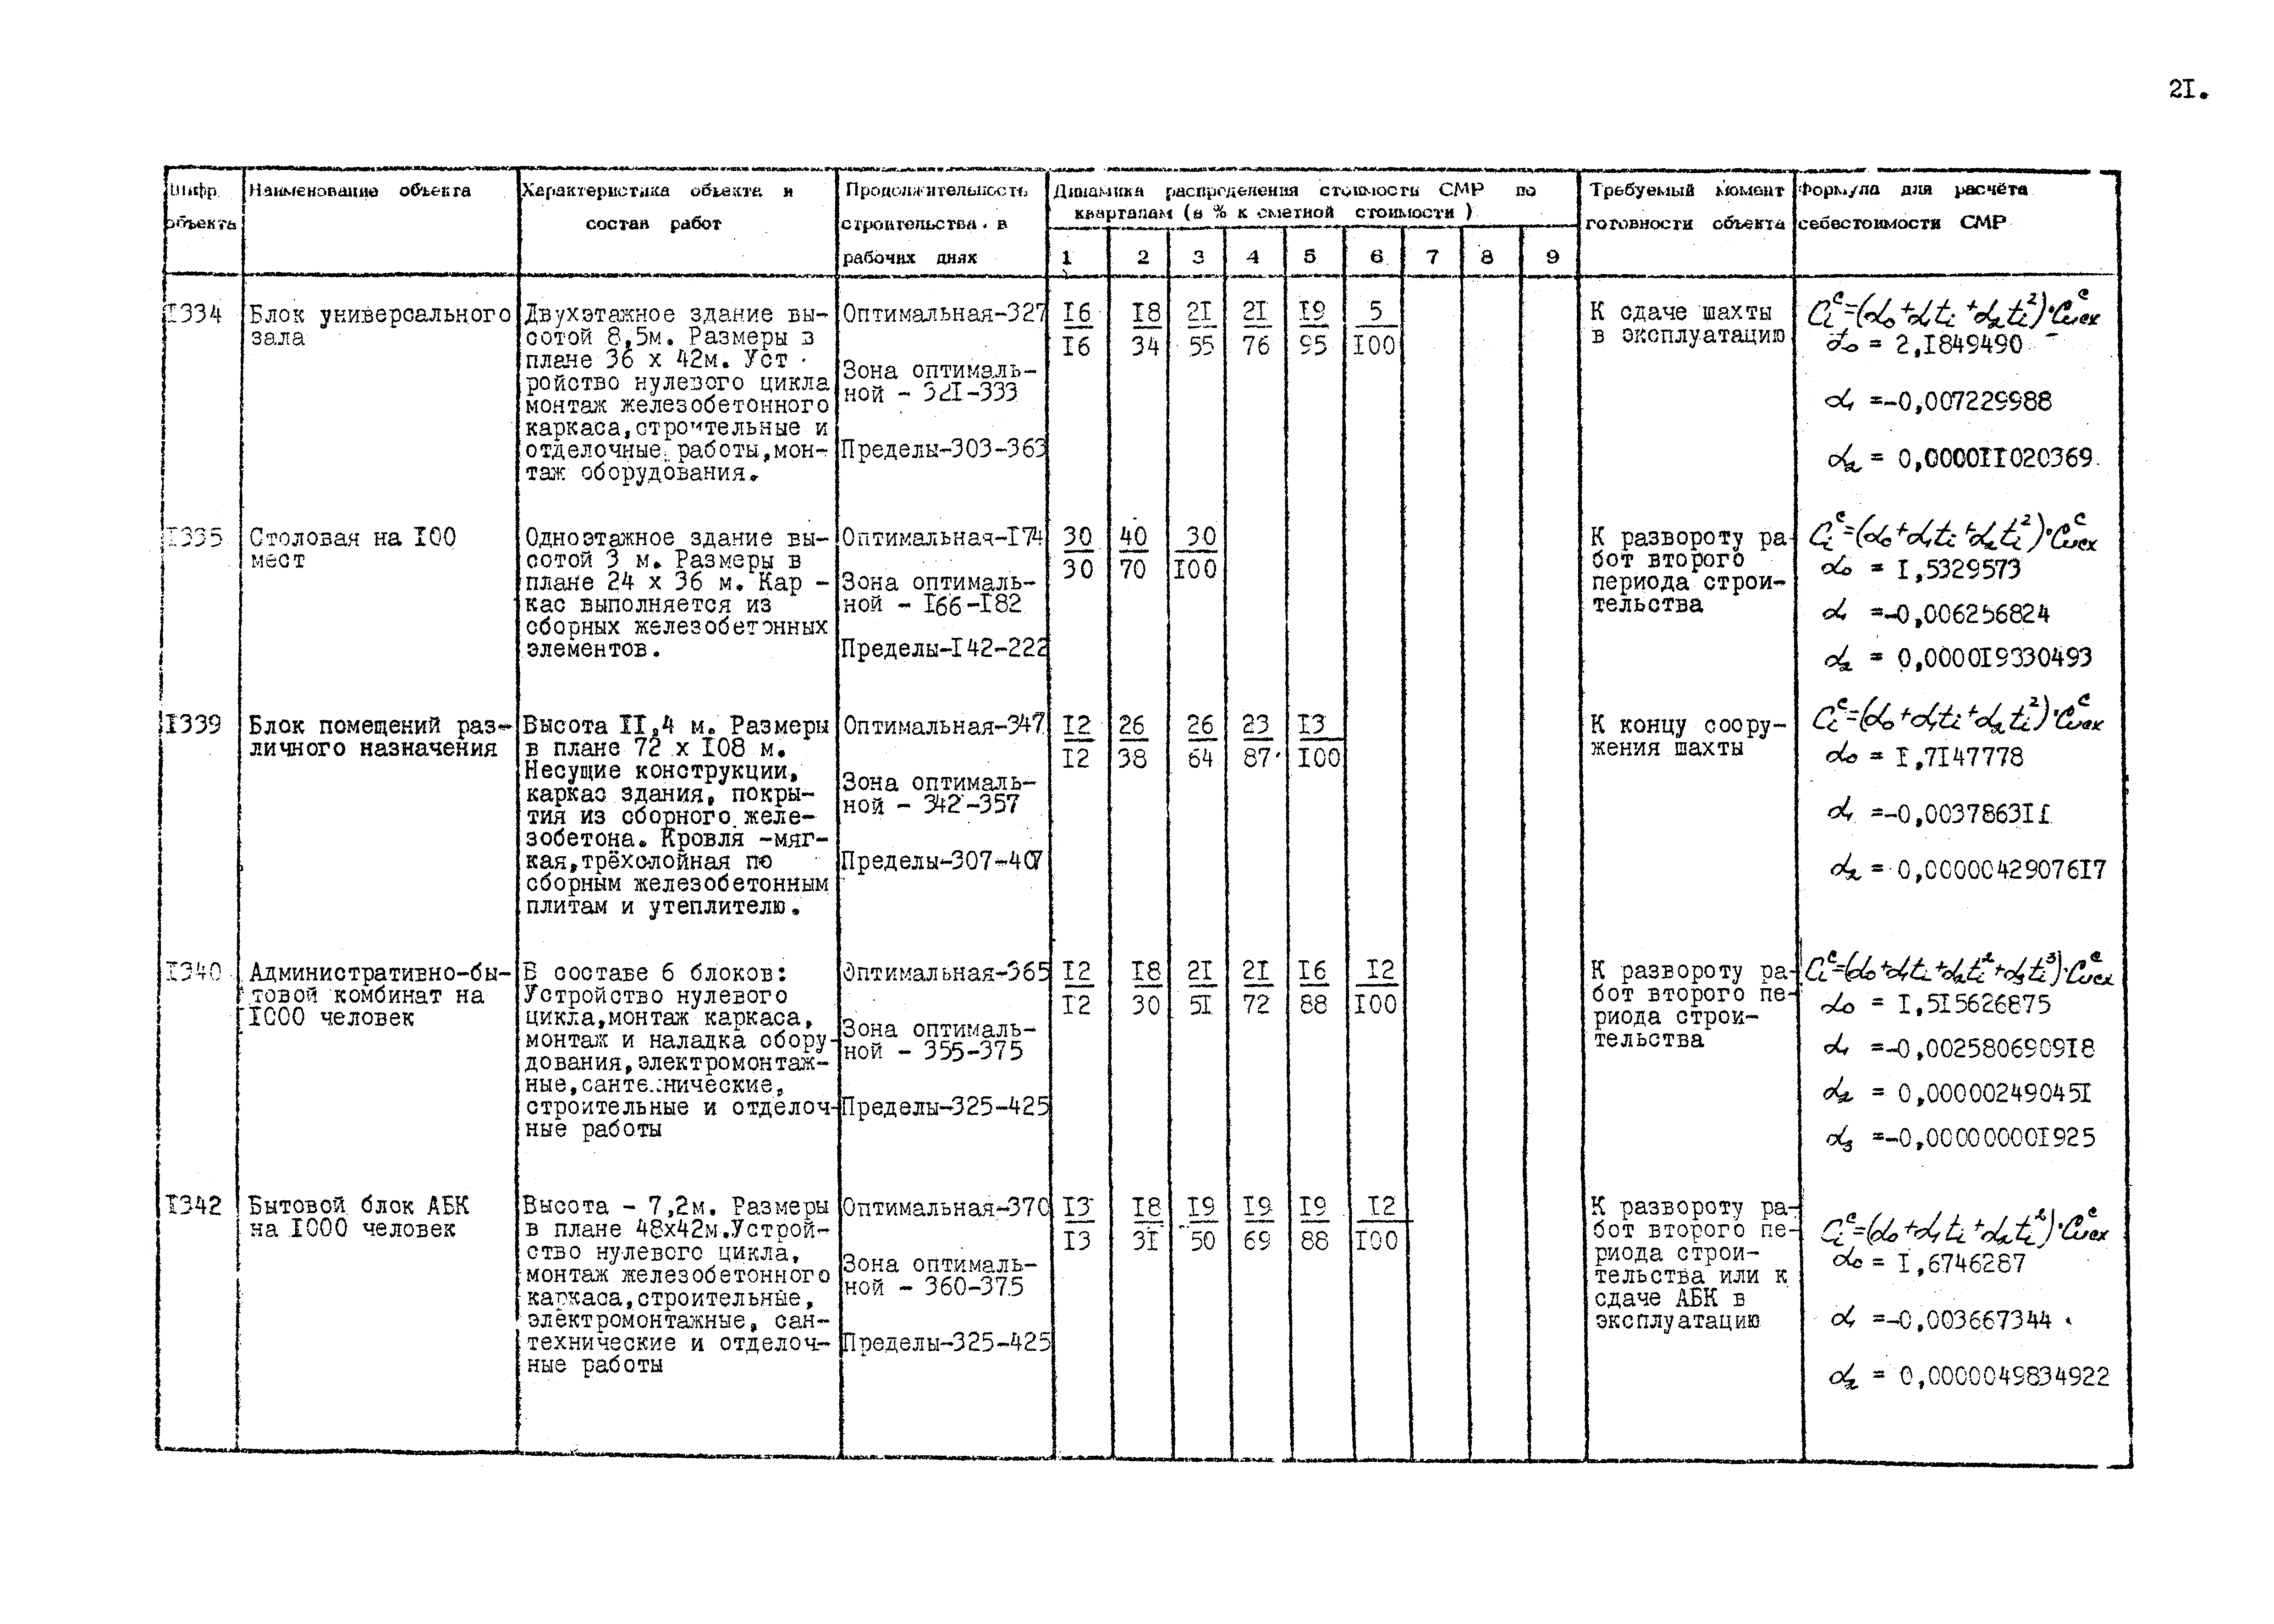 РД 12.13.036-87